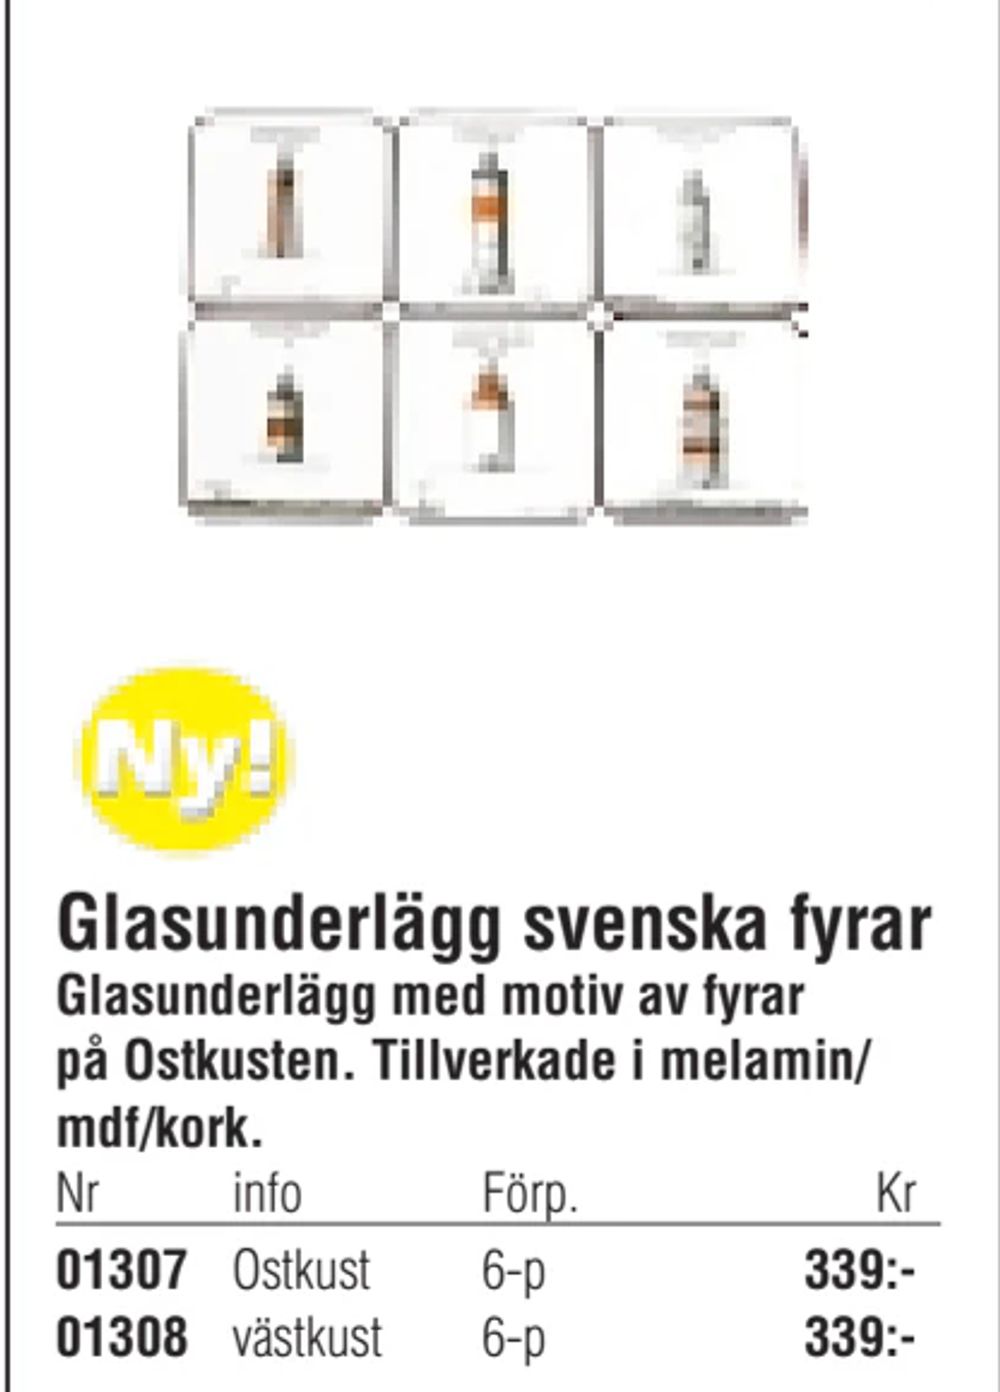 Erbjudanden på Glasunderlägg svenska fyrar från Erlandsons Brygga för 339 kr